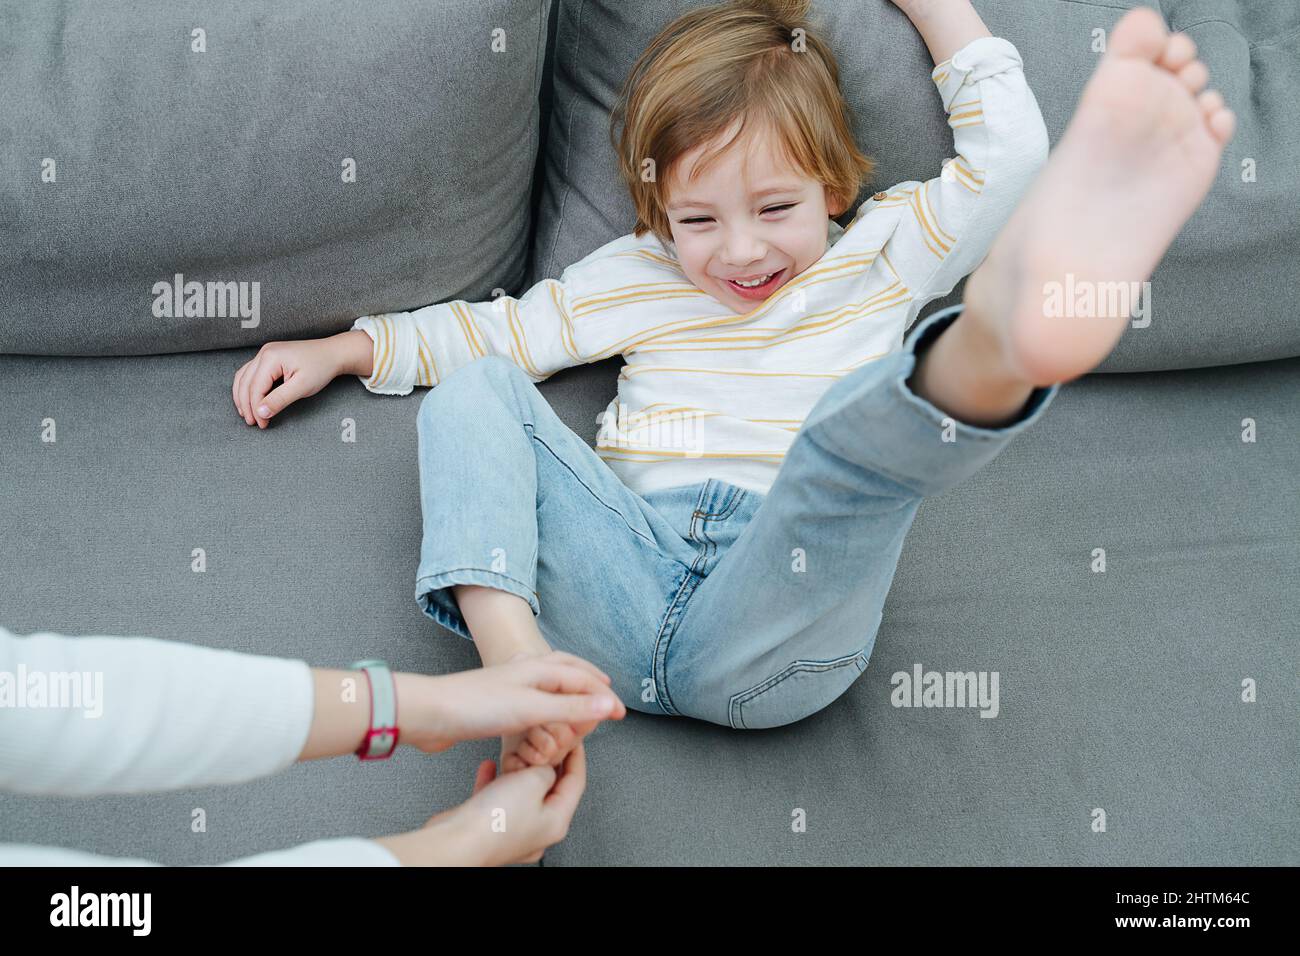 Spritzender lachender Junge, der von den Händen des Mädchens mit dem Fuß auf der Couch gekitzelt wird. Stockfoto